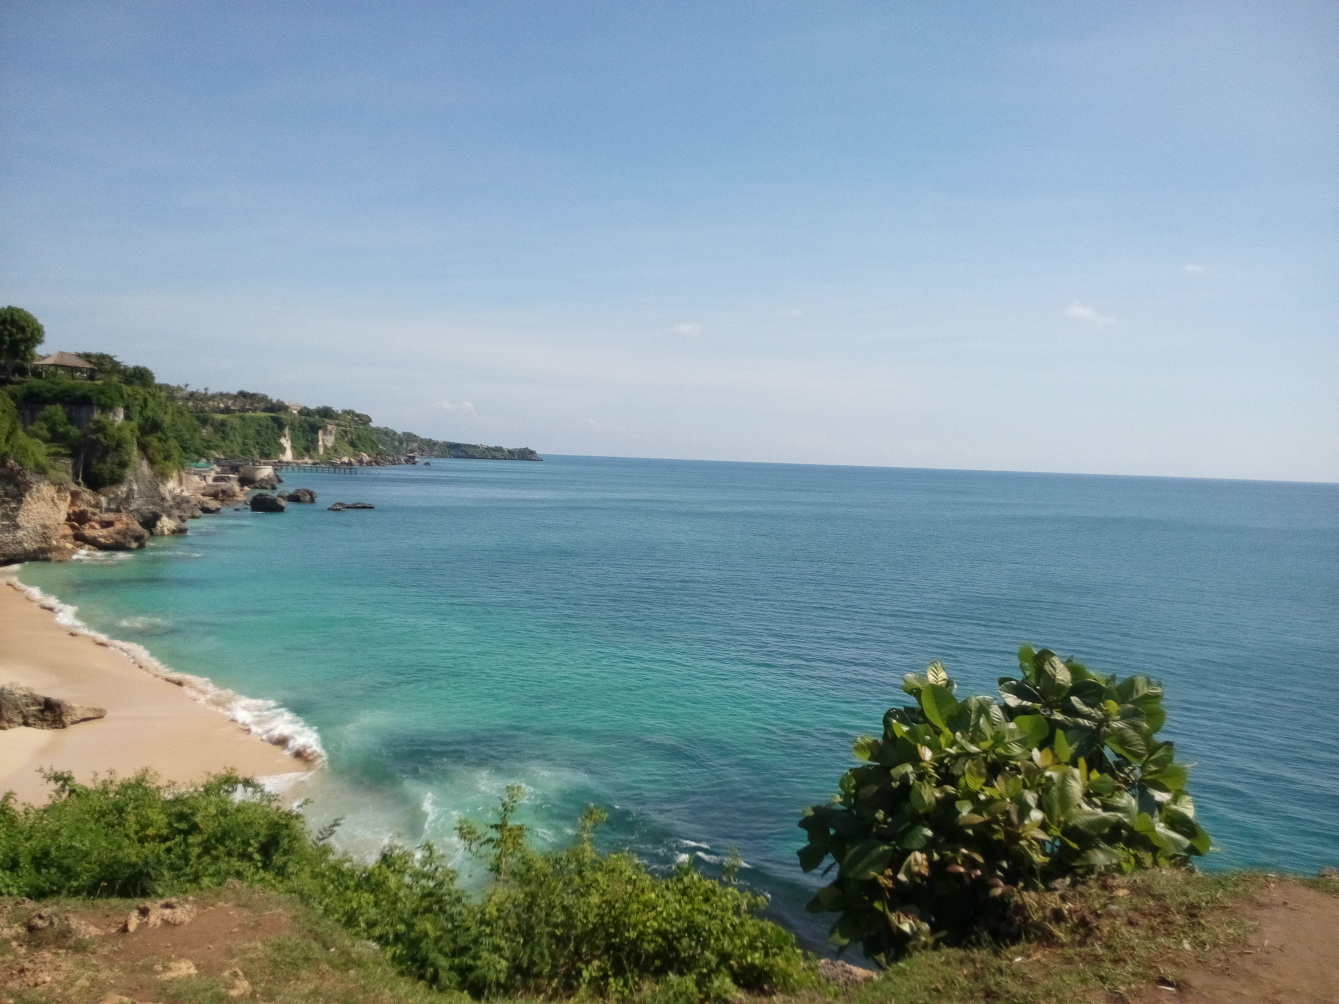 Source File : Wikipedia Padang Padang Beach, Badung, Bali Image By : Felly A - Own Work CC BY-SA 4.0